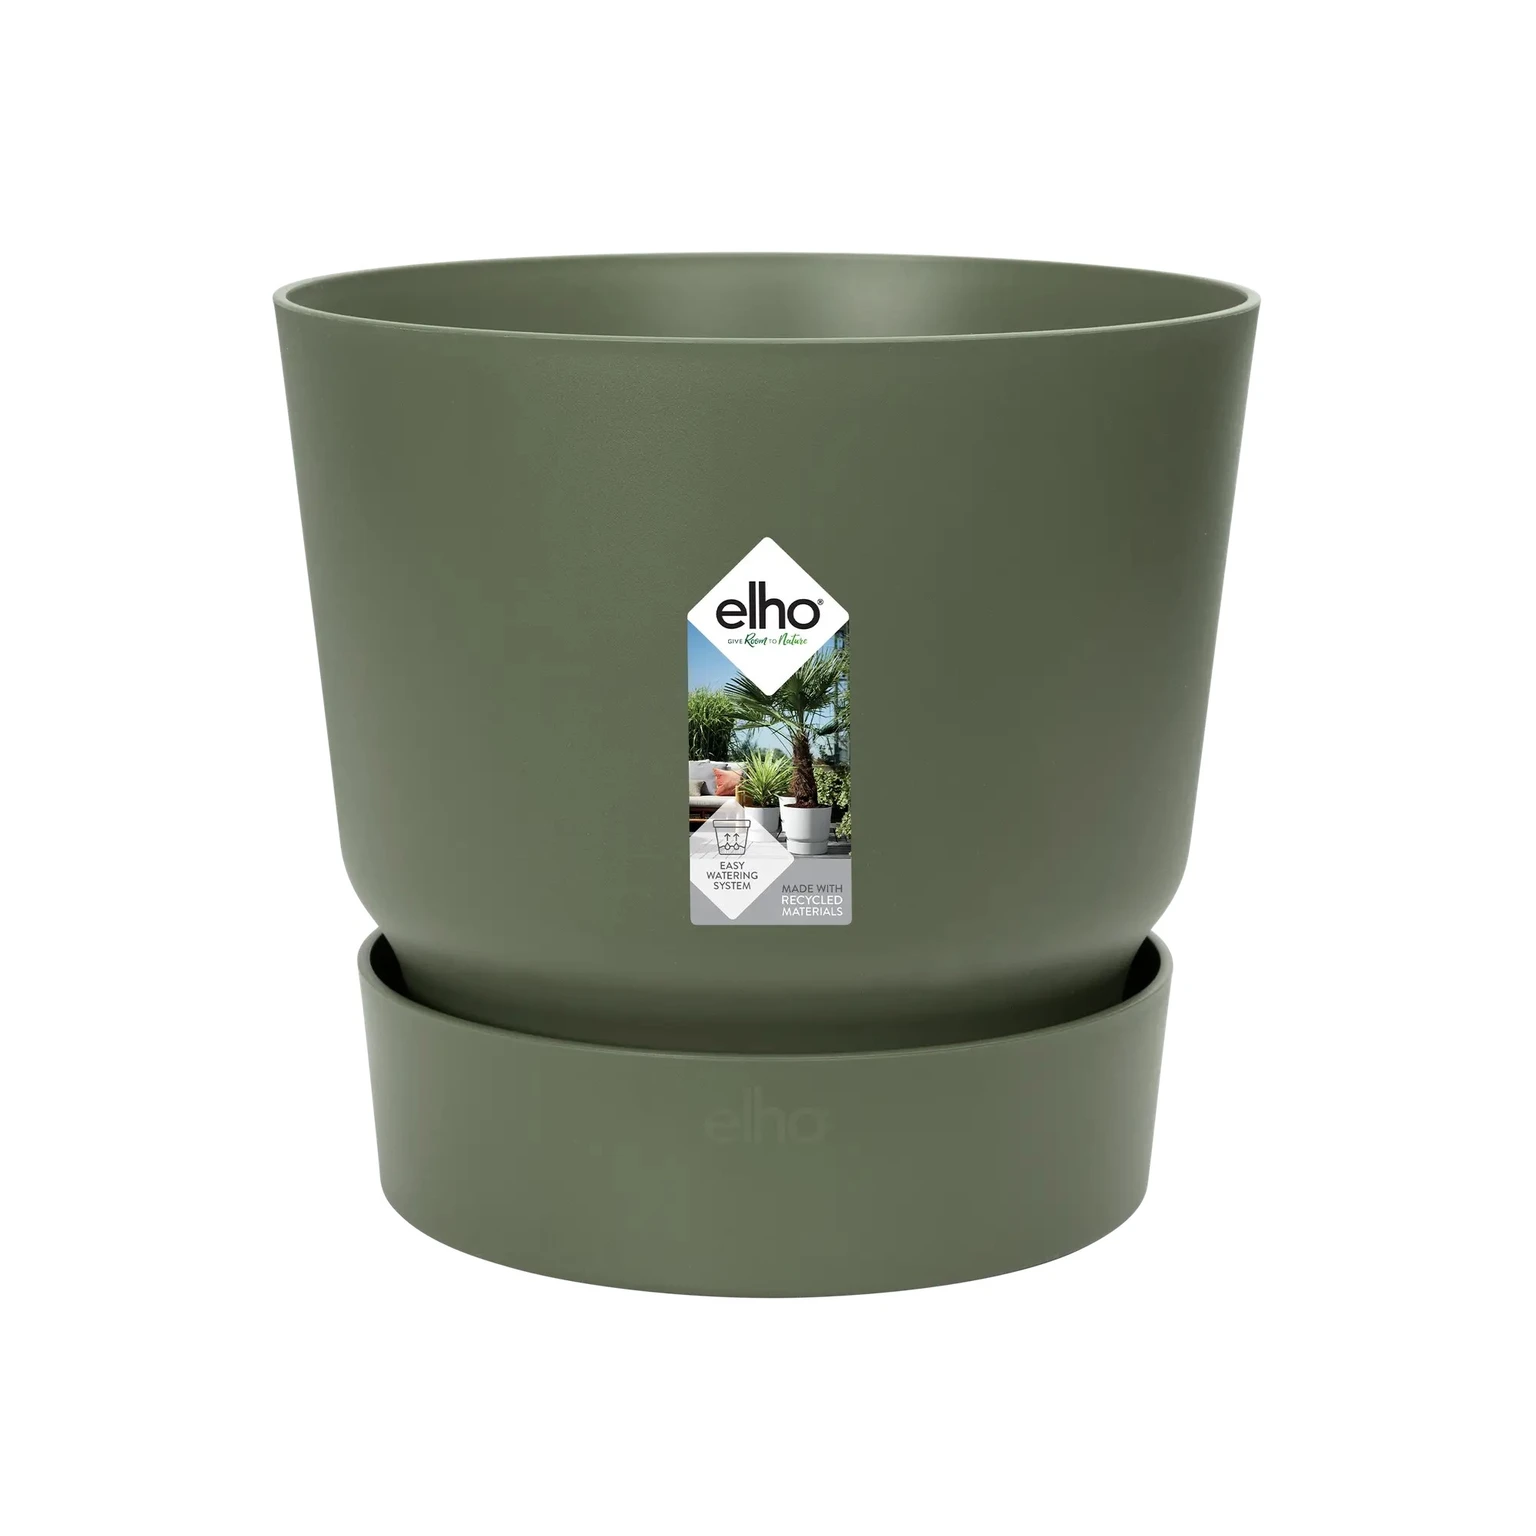 Elho Greenville Rond 55cm - Grote Bloempot voor Buiten - Inclusief Waterreservoir - 100% Gerecycled Plastic - Groen/Blad Groen